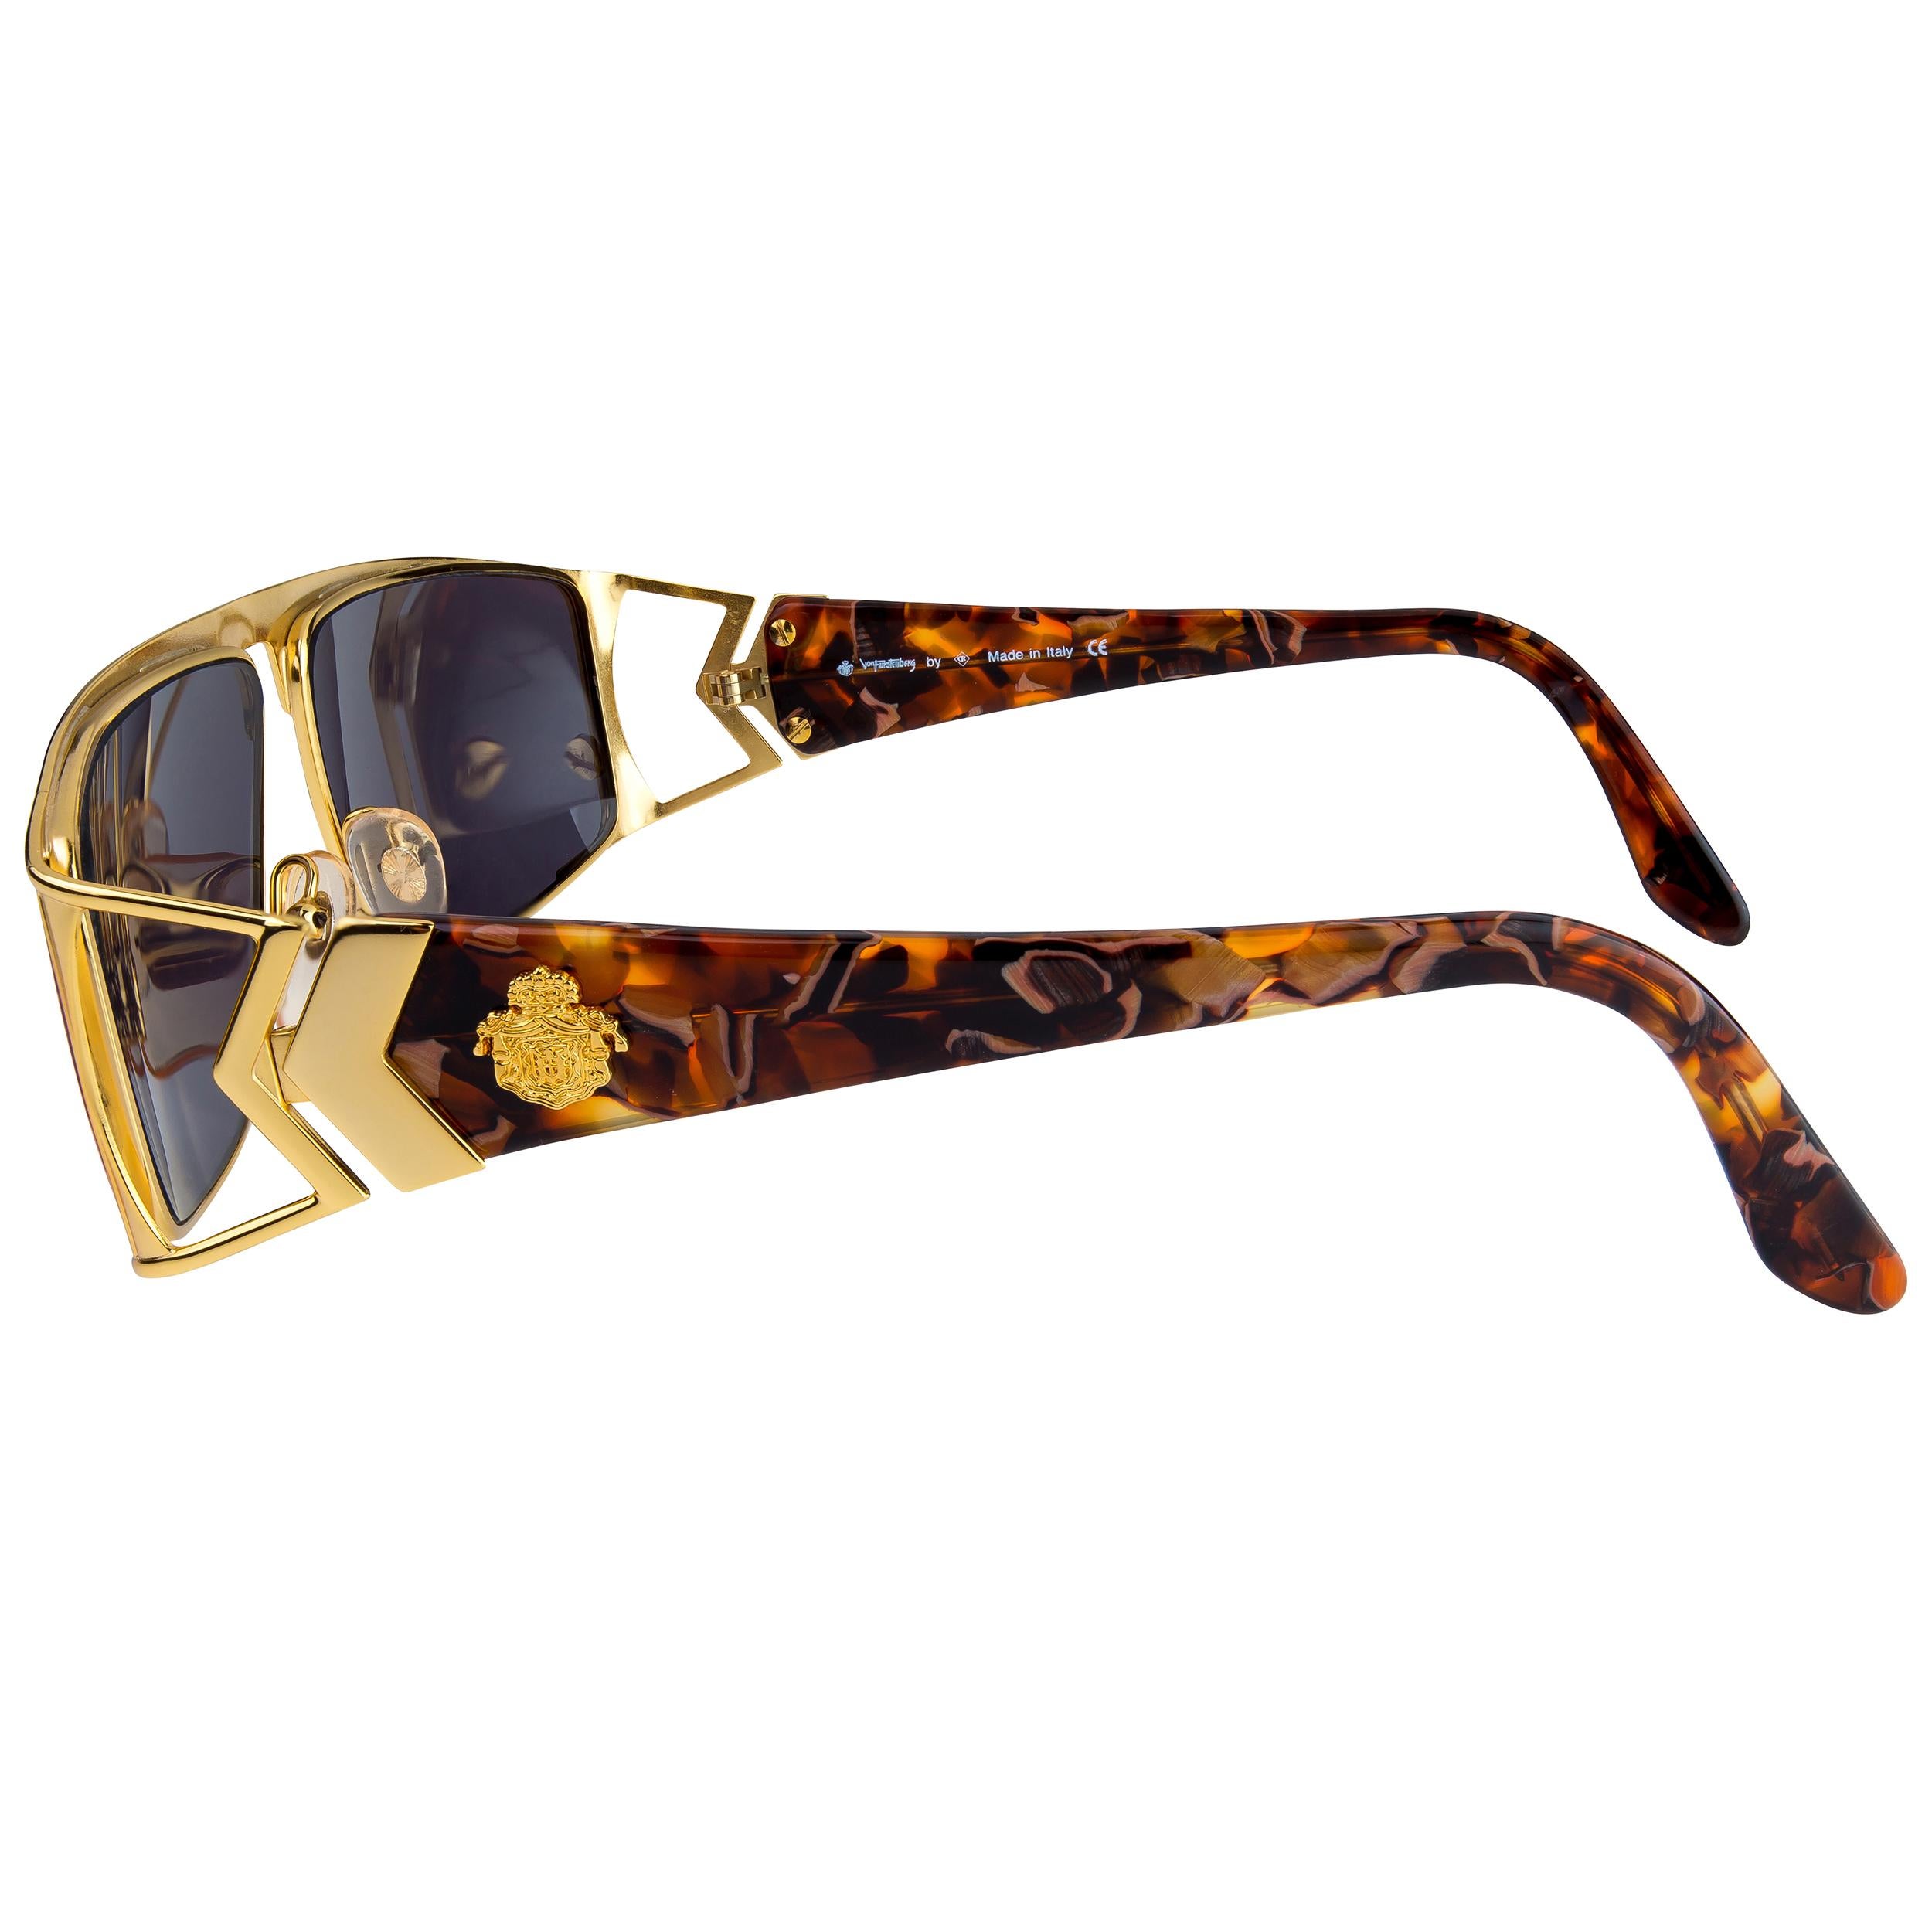 Noir Von Furstenberg lunettes de soleil aviateur dorées, années 80 en vente